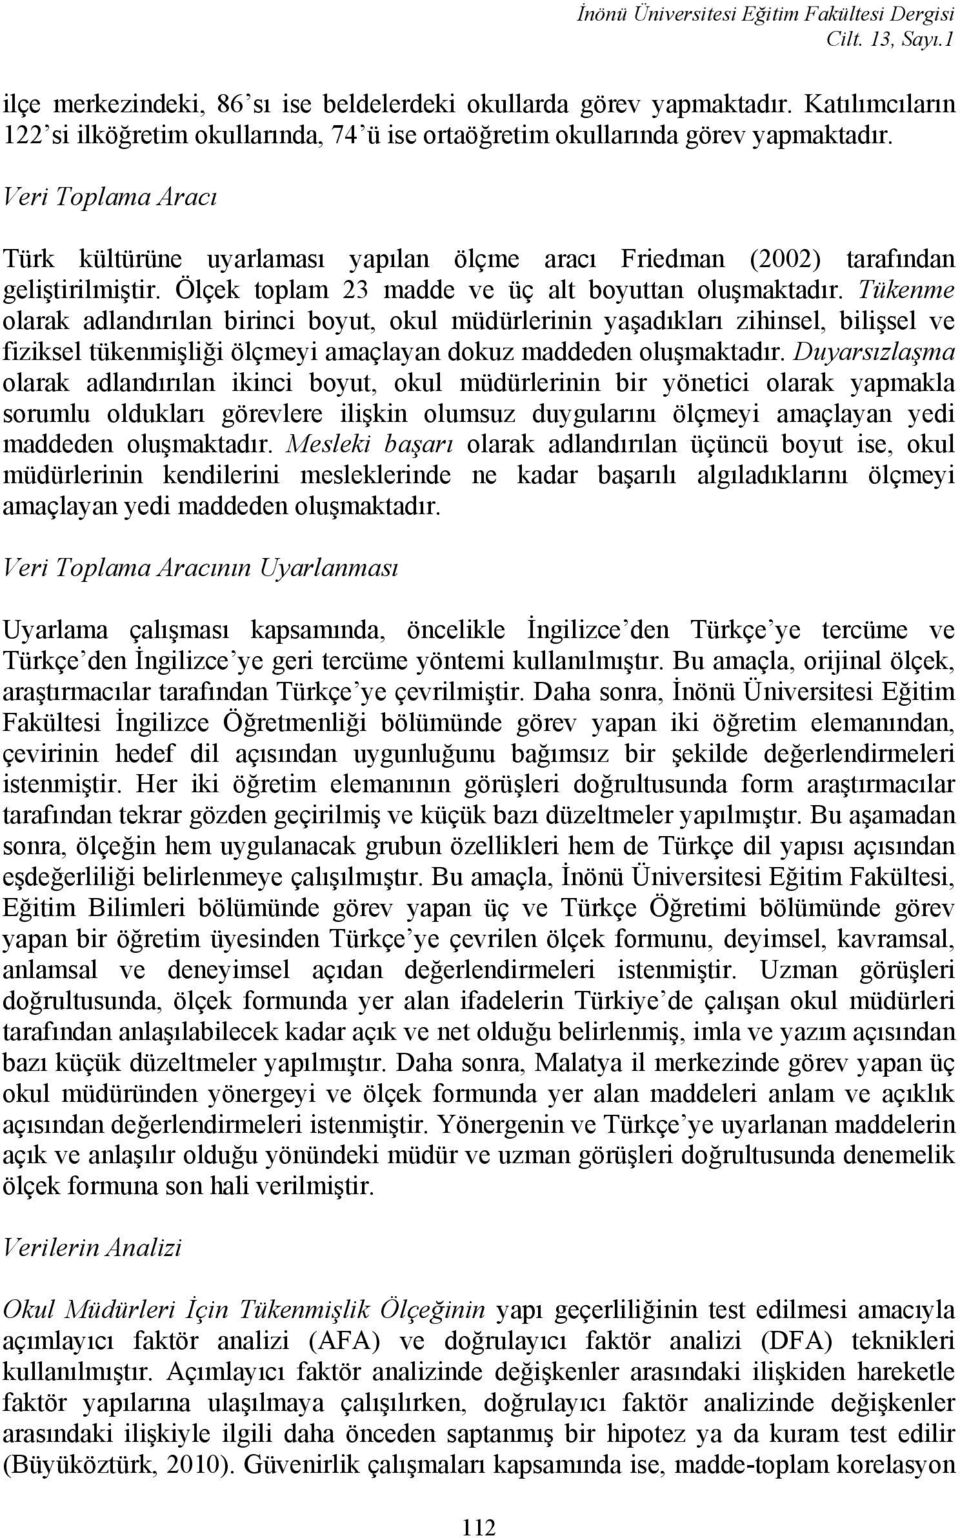 Veri Toplama Aracı Türk kültürüne uyarlaması yapılan ölçme aracı Friedman (2002) tarafından geliştirilmiştir. Ölçek toplam 23 madde ve üç alt boyuttan oluşmaktadır.